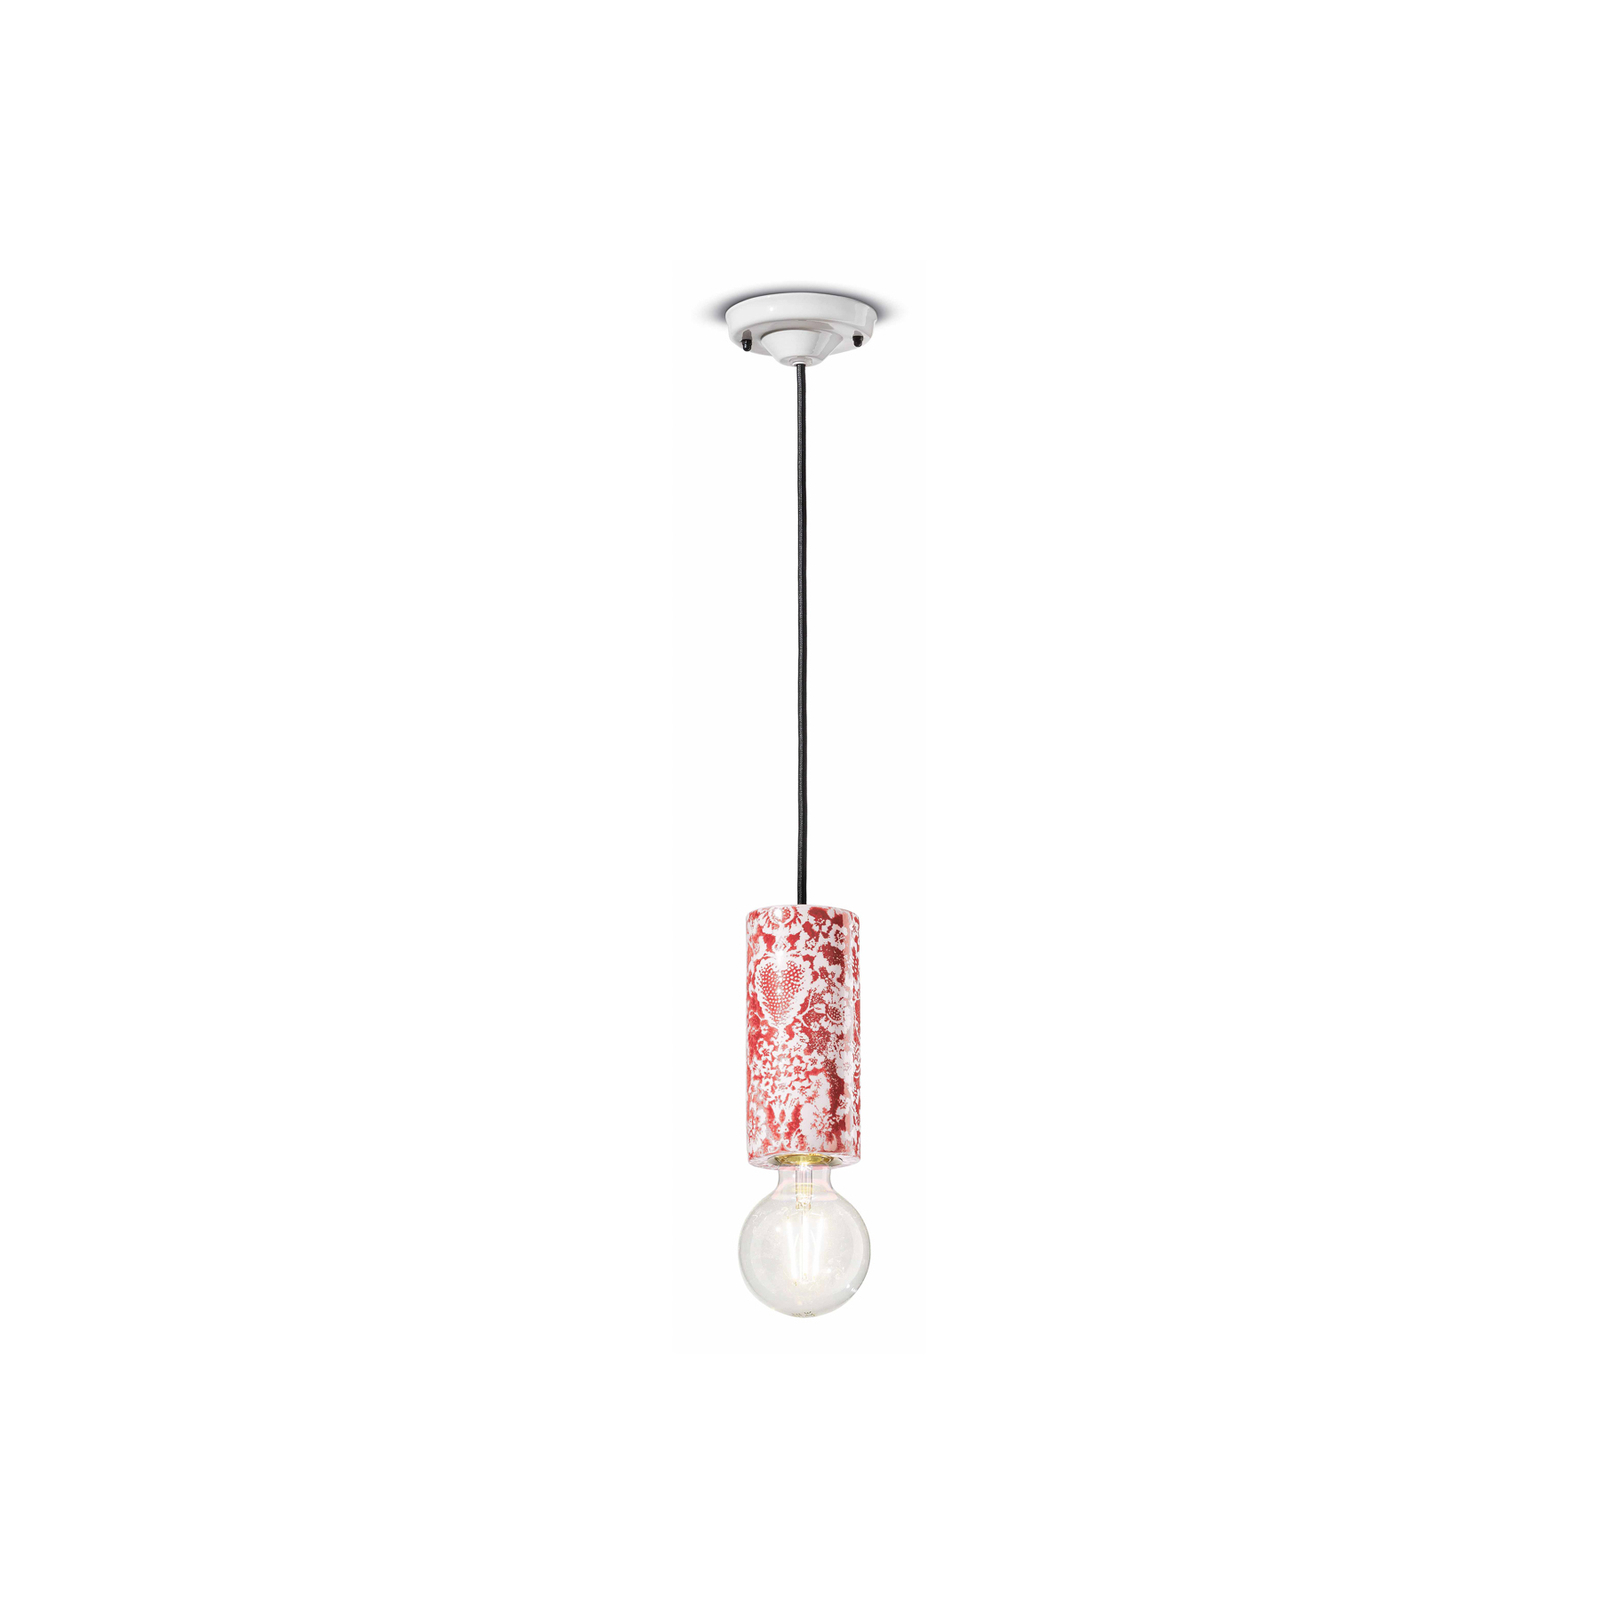 PI hanging light, floral pattern Ø 8 cm red/white